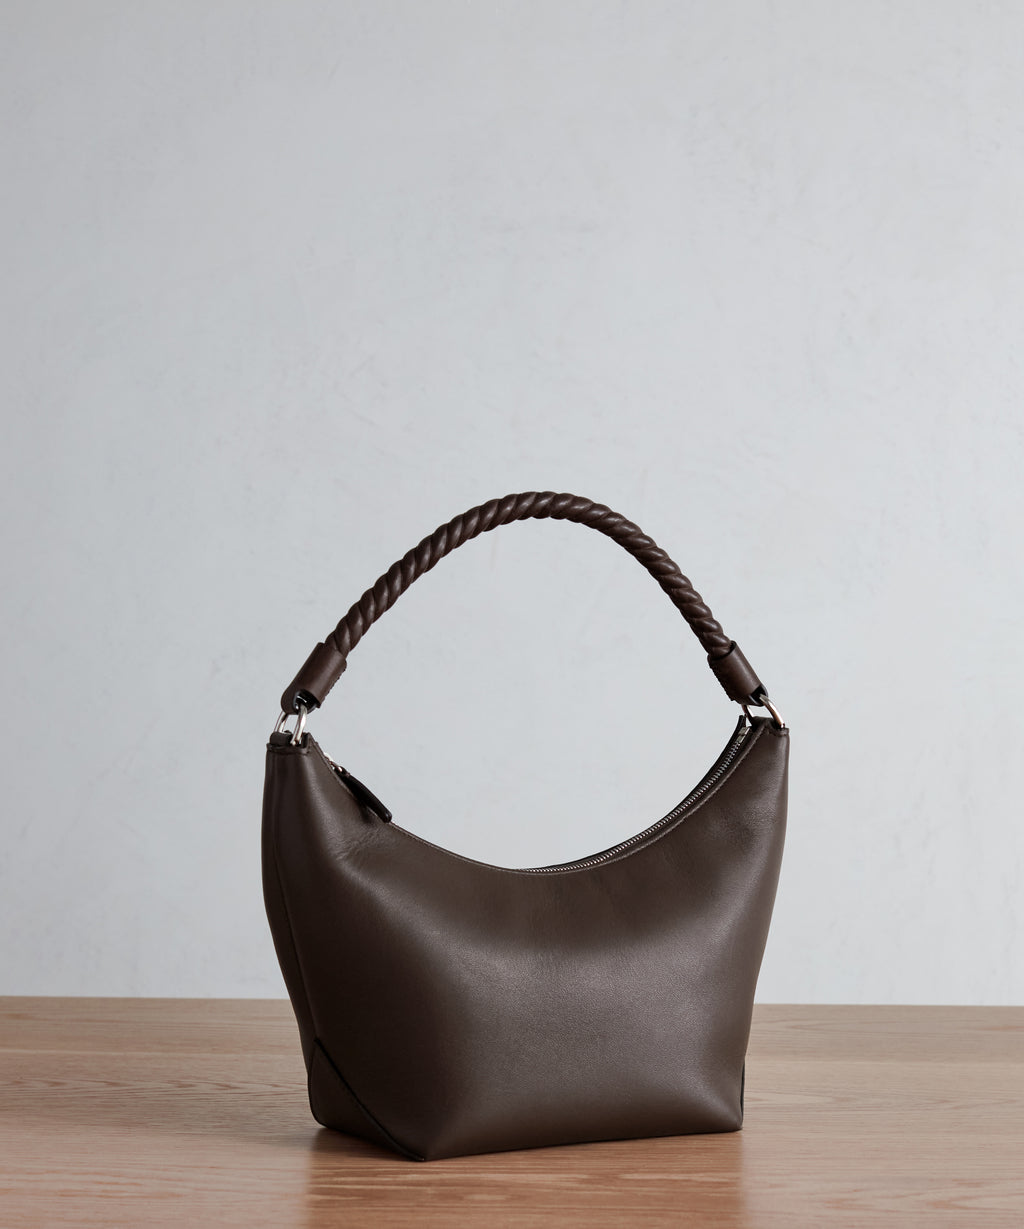 XL Vintage Gucci 2 Way Espresso Brown Leather Bag